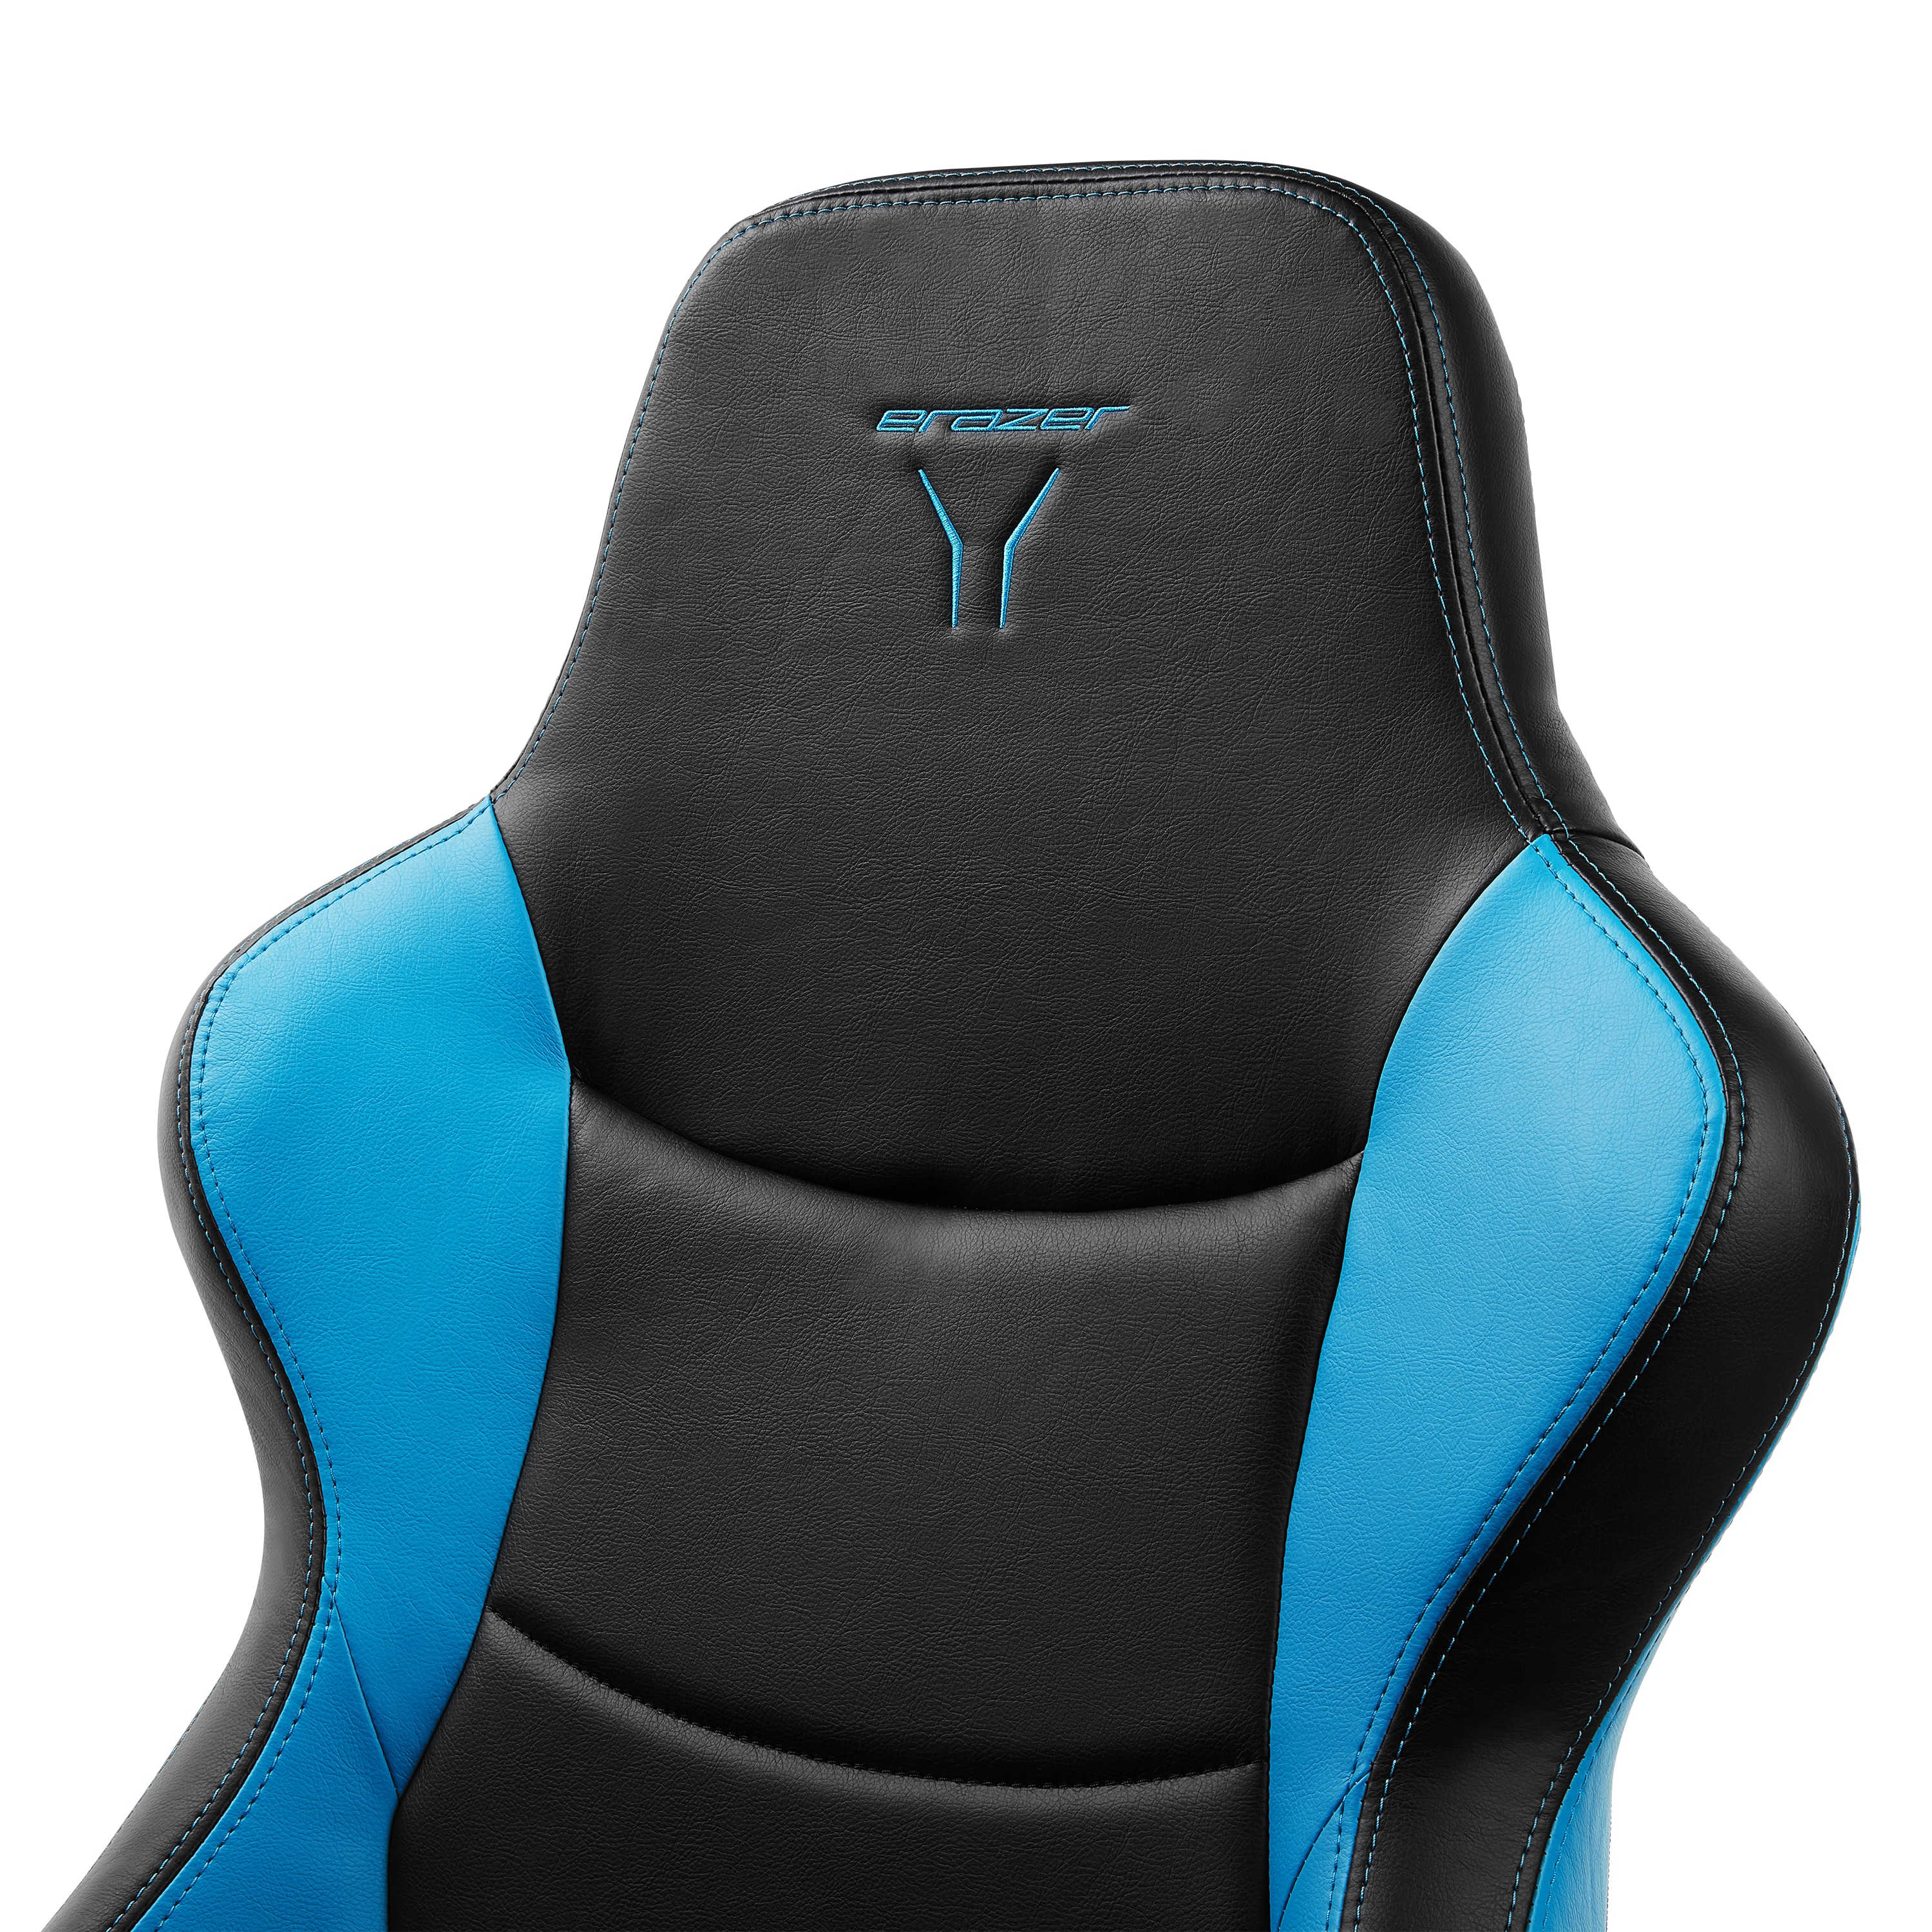 MEDION® ERAZER® X89018 Gaming Stuhl, stilvoll und komfortabel, sportliche Optik und hochwertige Materialien, mit 2 Kissen für den Rücken- und Kopfbereich